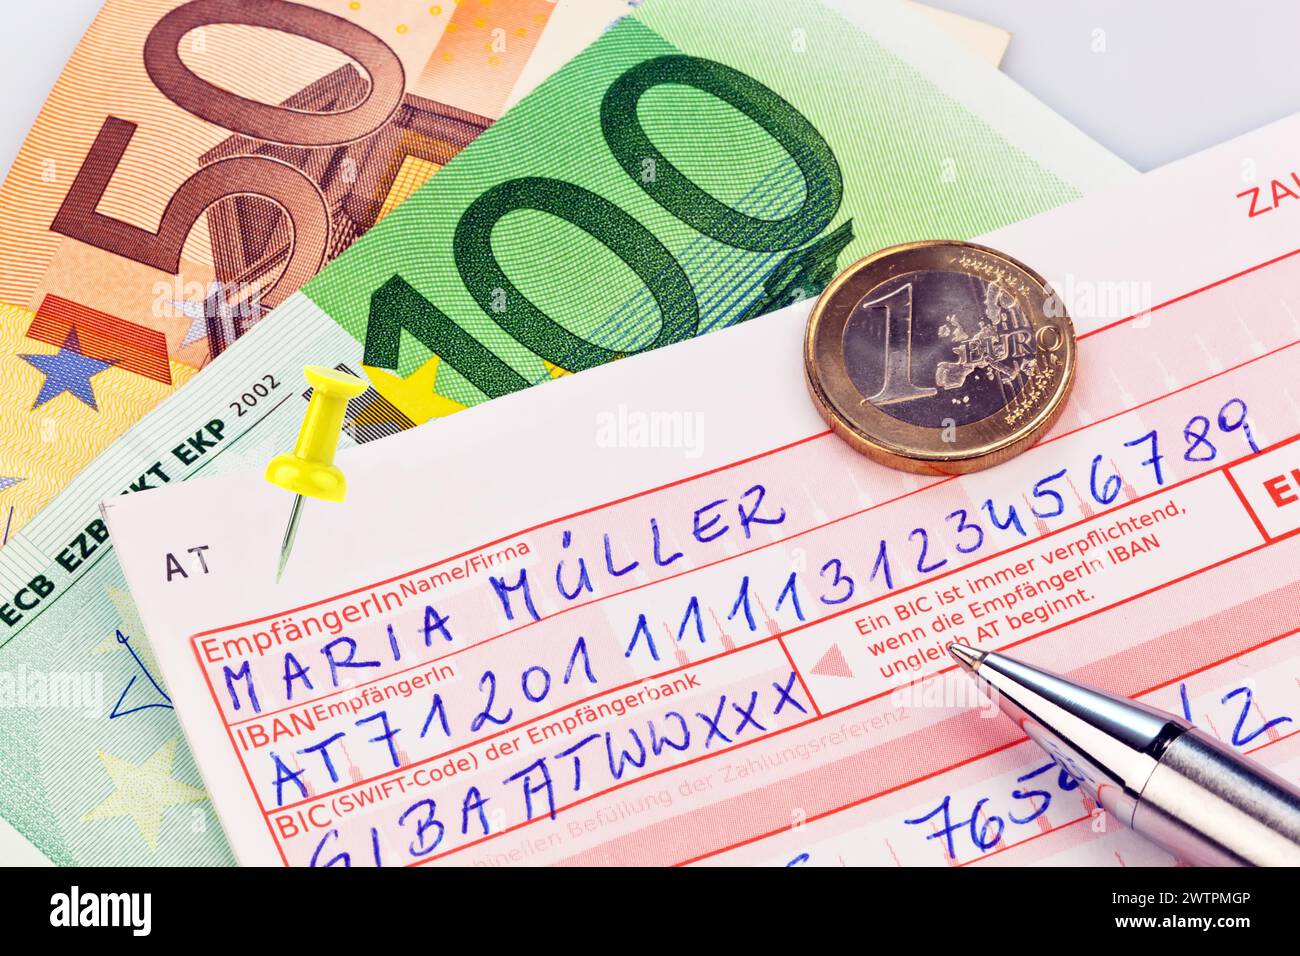 Una ricevuta di pagamento per bonifico bancario o deposito in contanti con codice IBAN e BIC dall'Austria Foto Stock